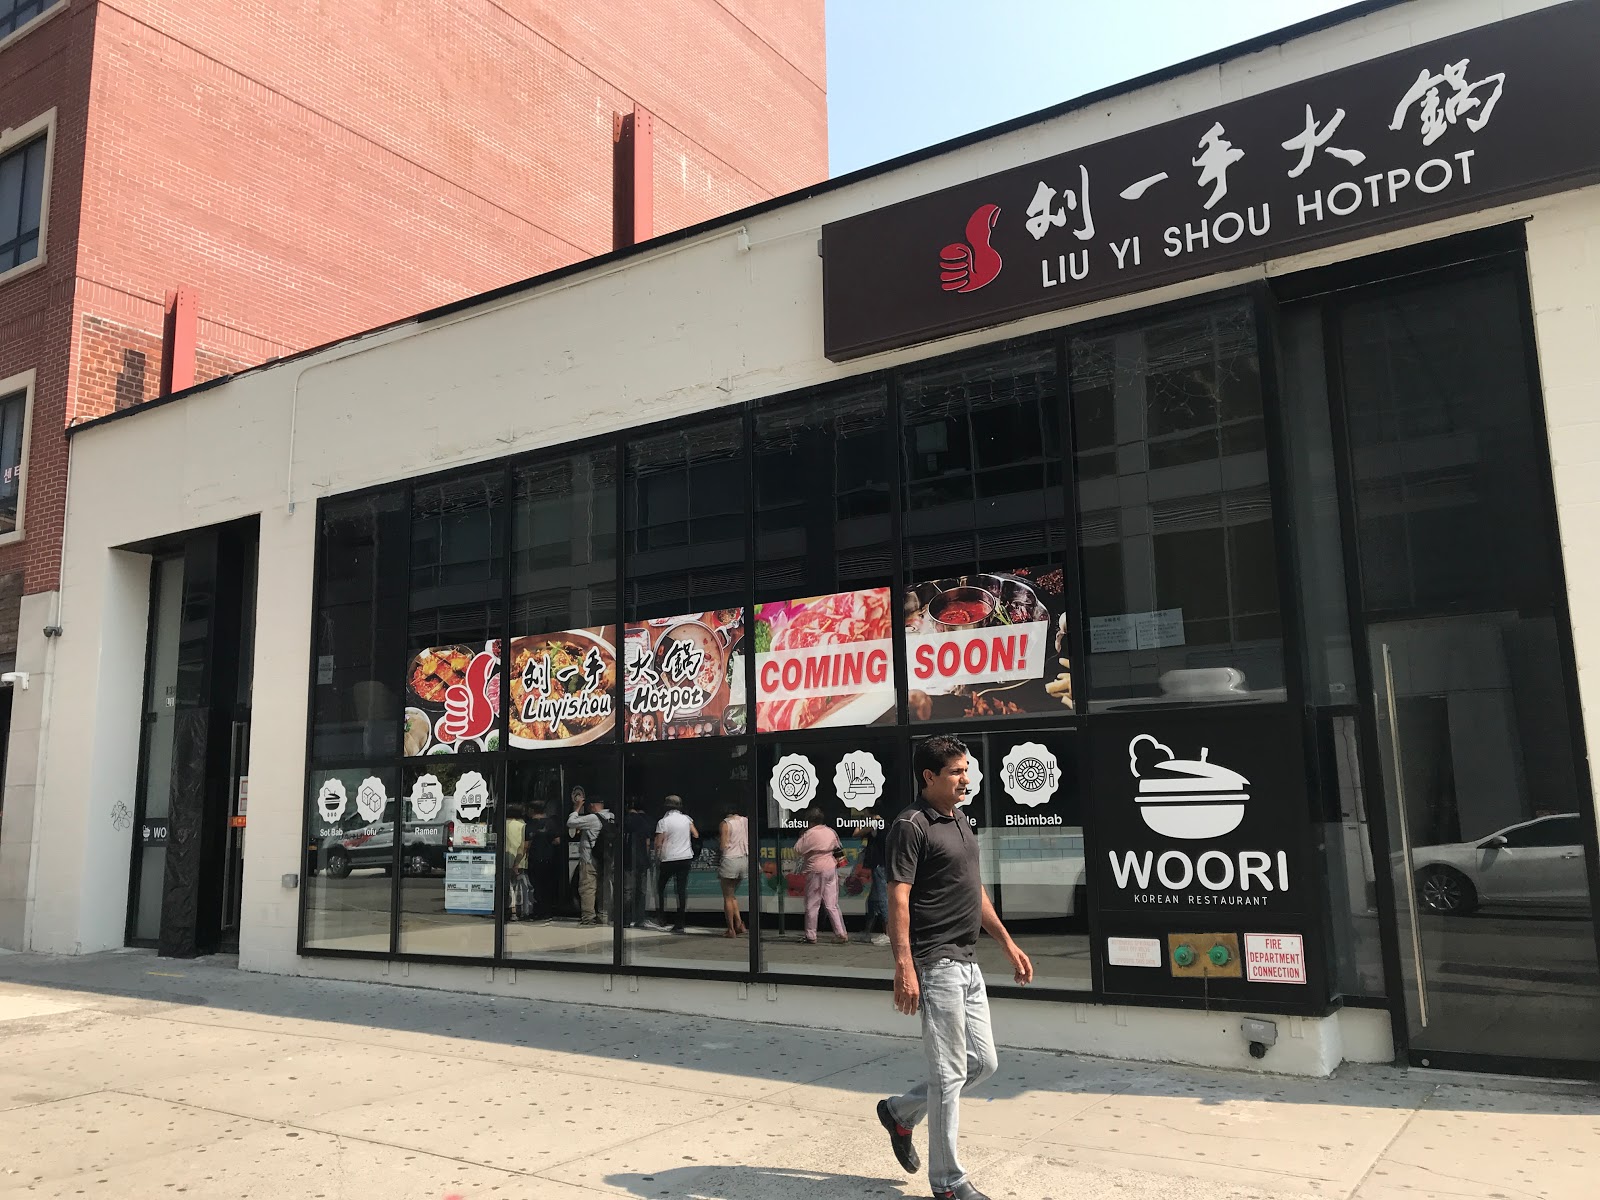 Restaurants Liuyishou Hotpot in Queens NY